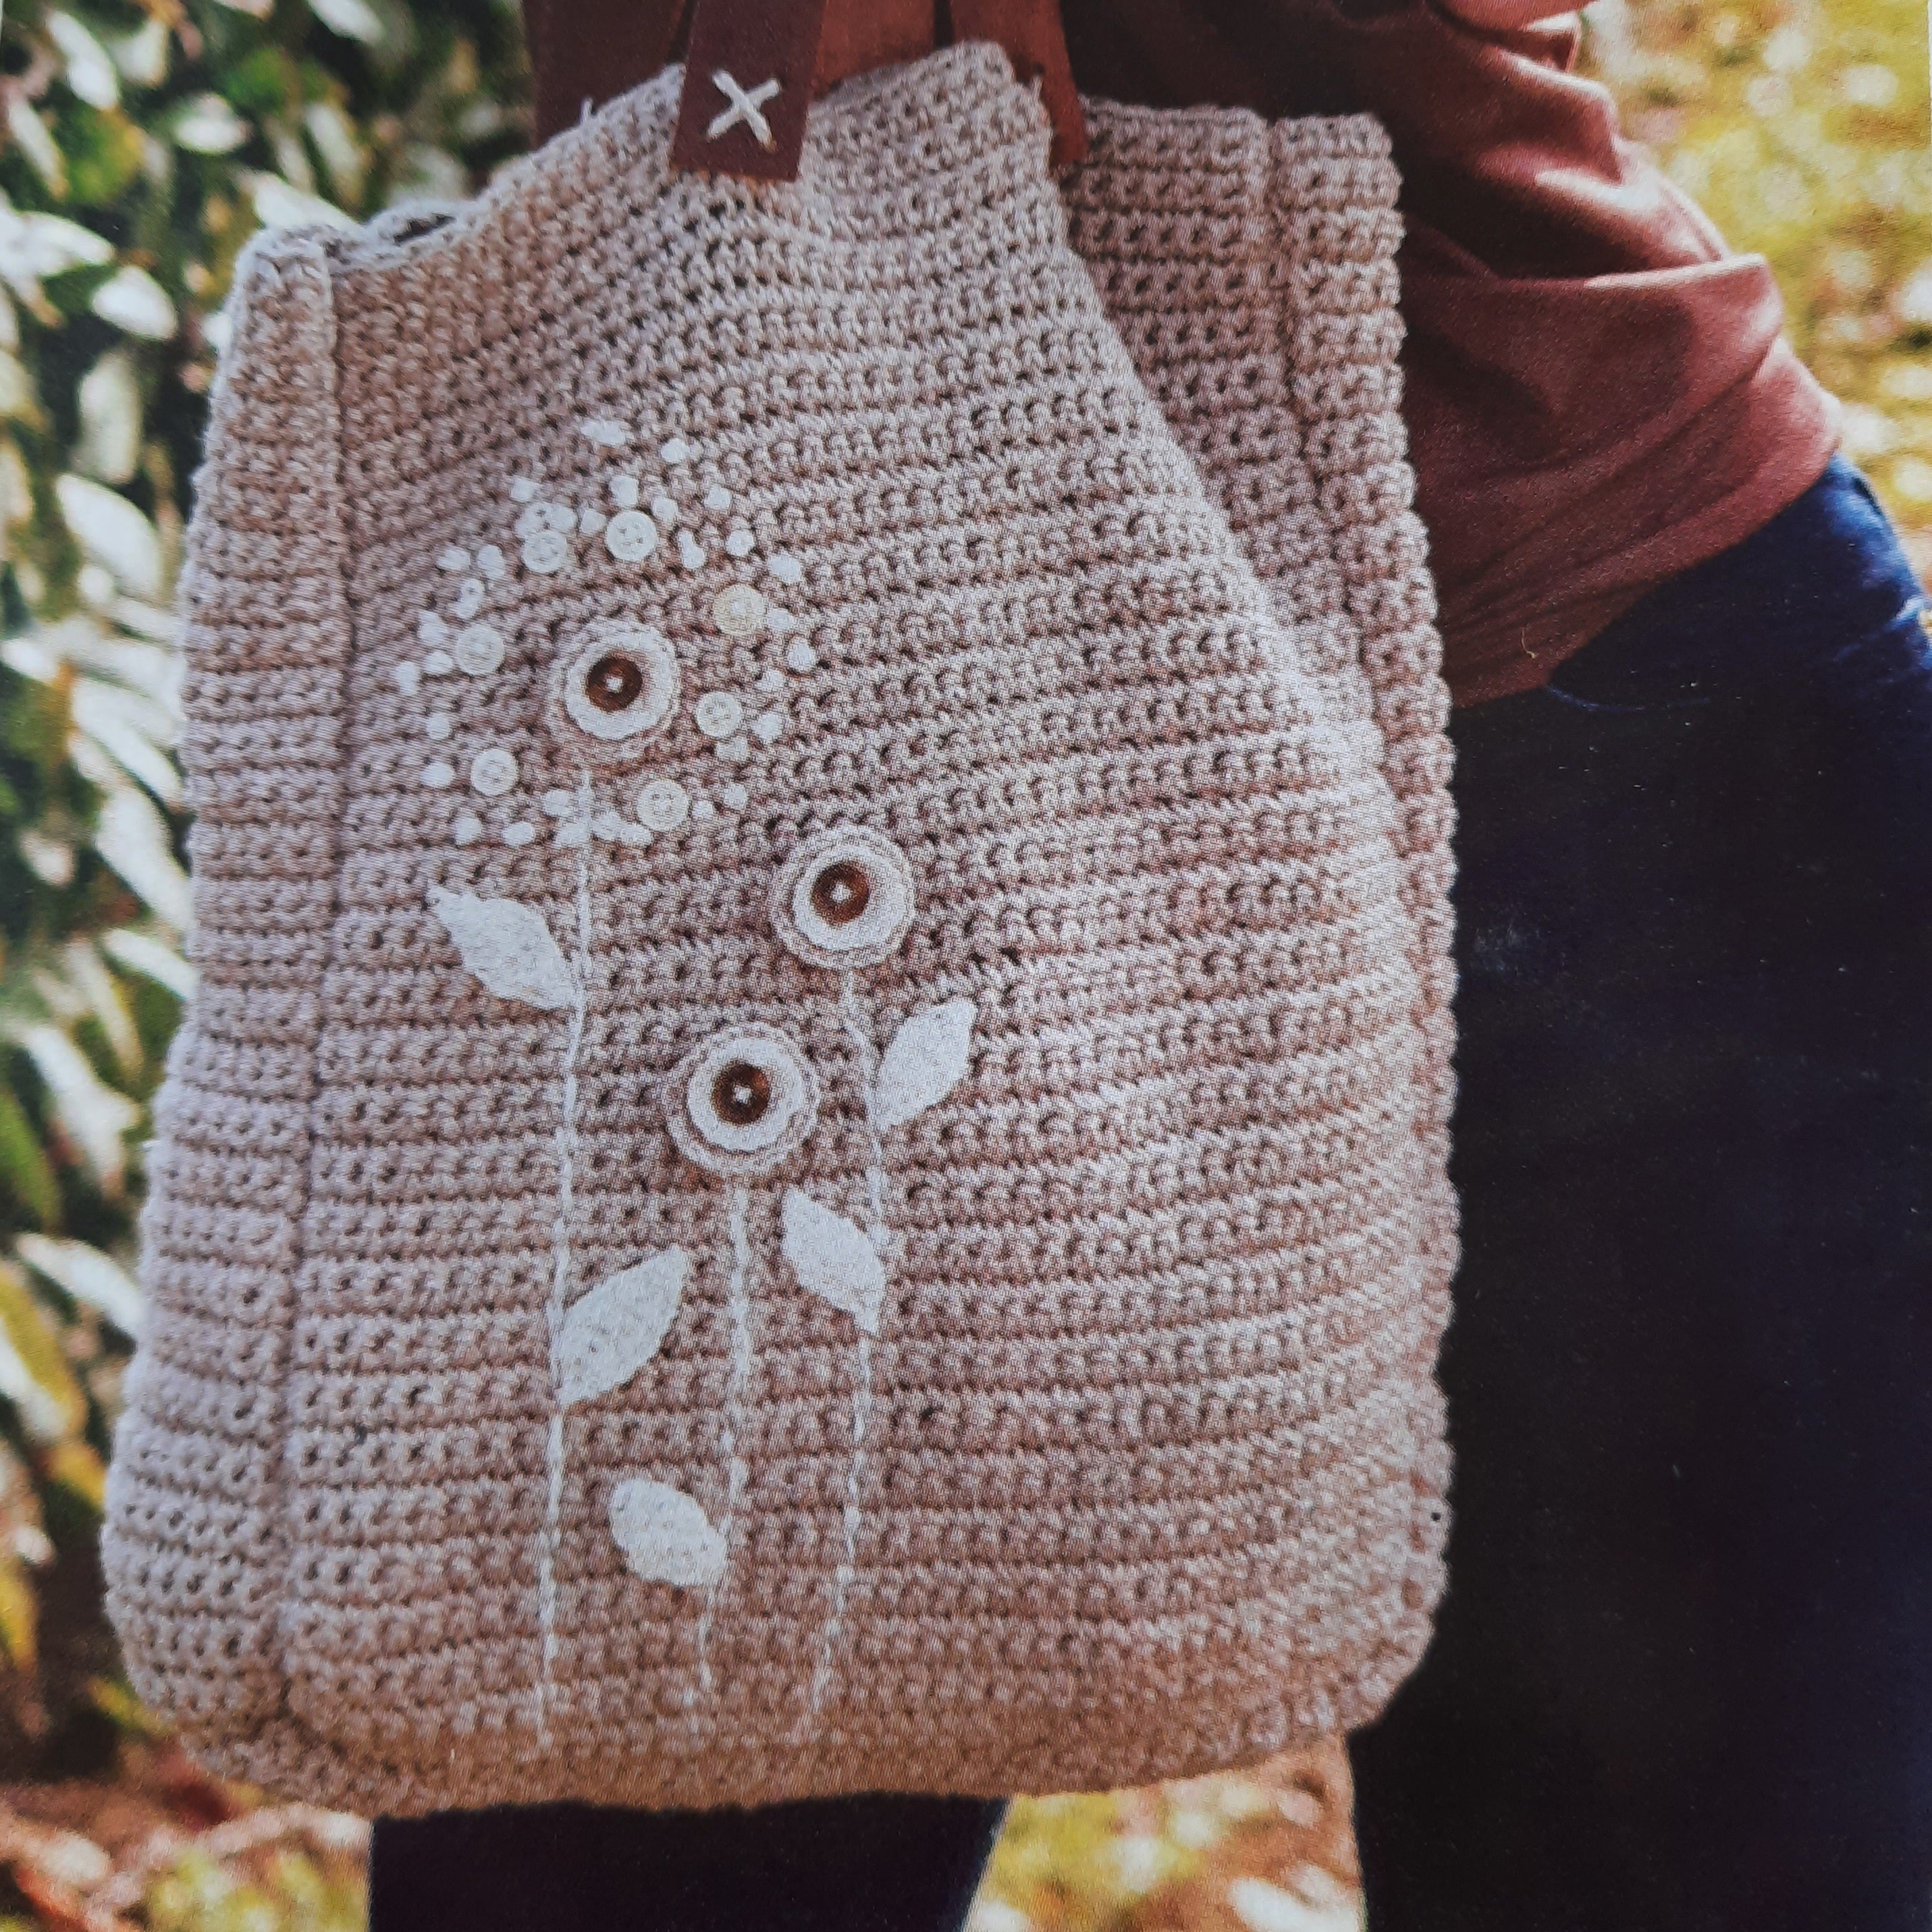 Granny square crochet tote bag - AuthIndia